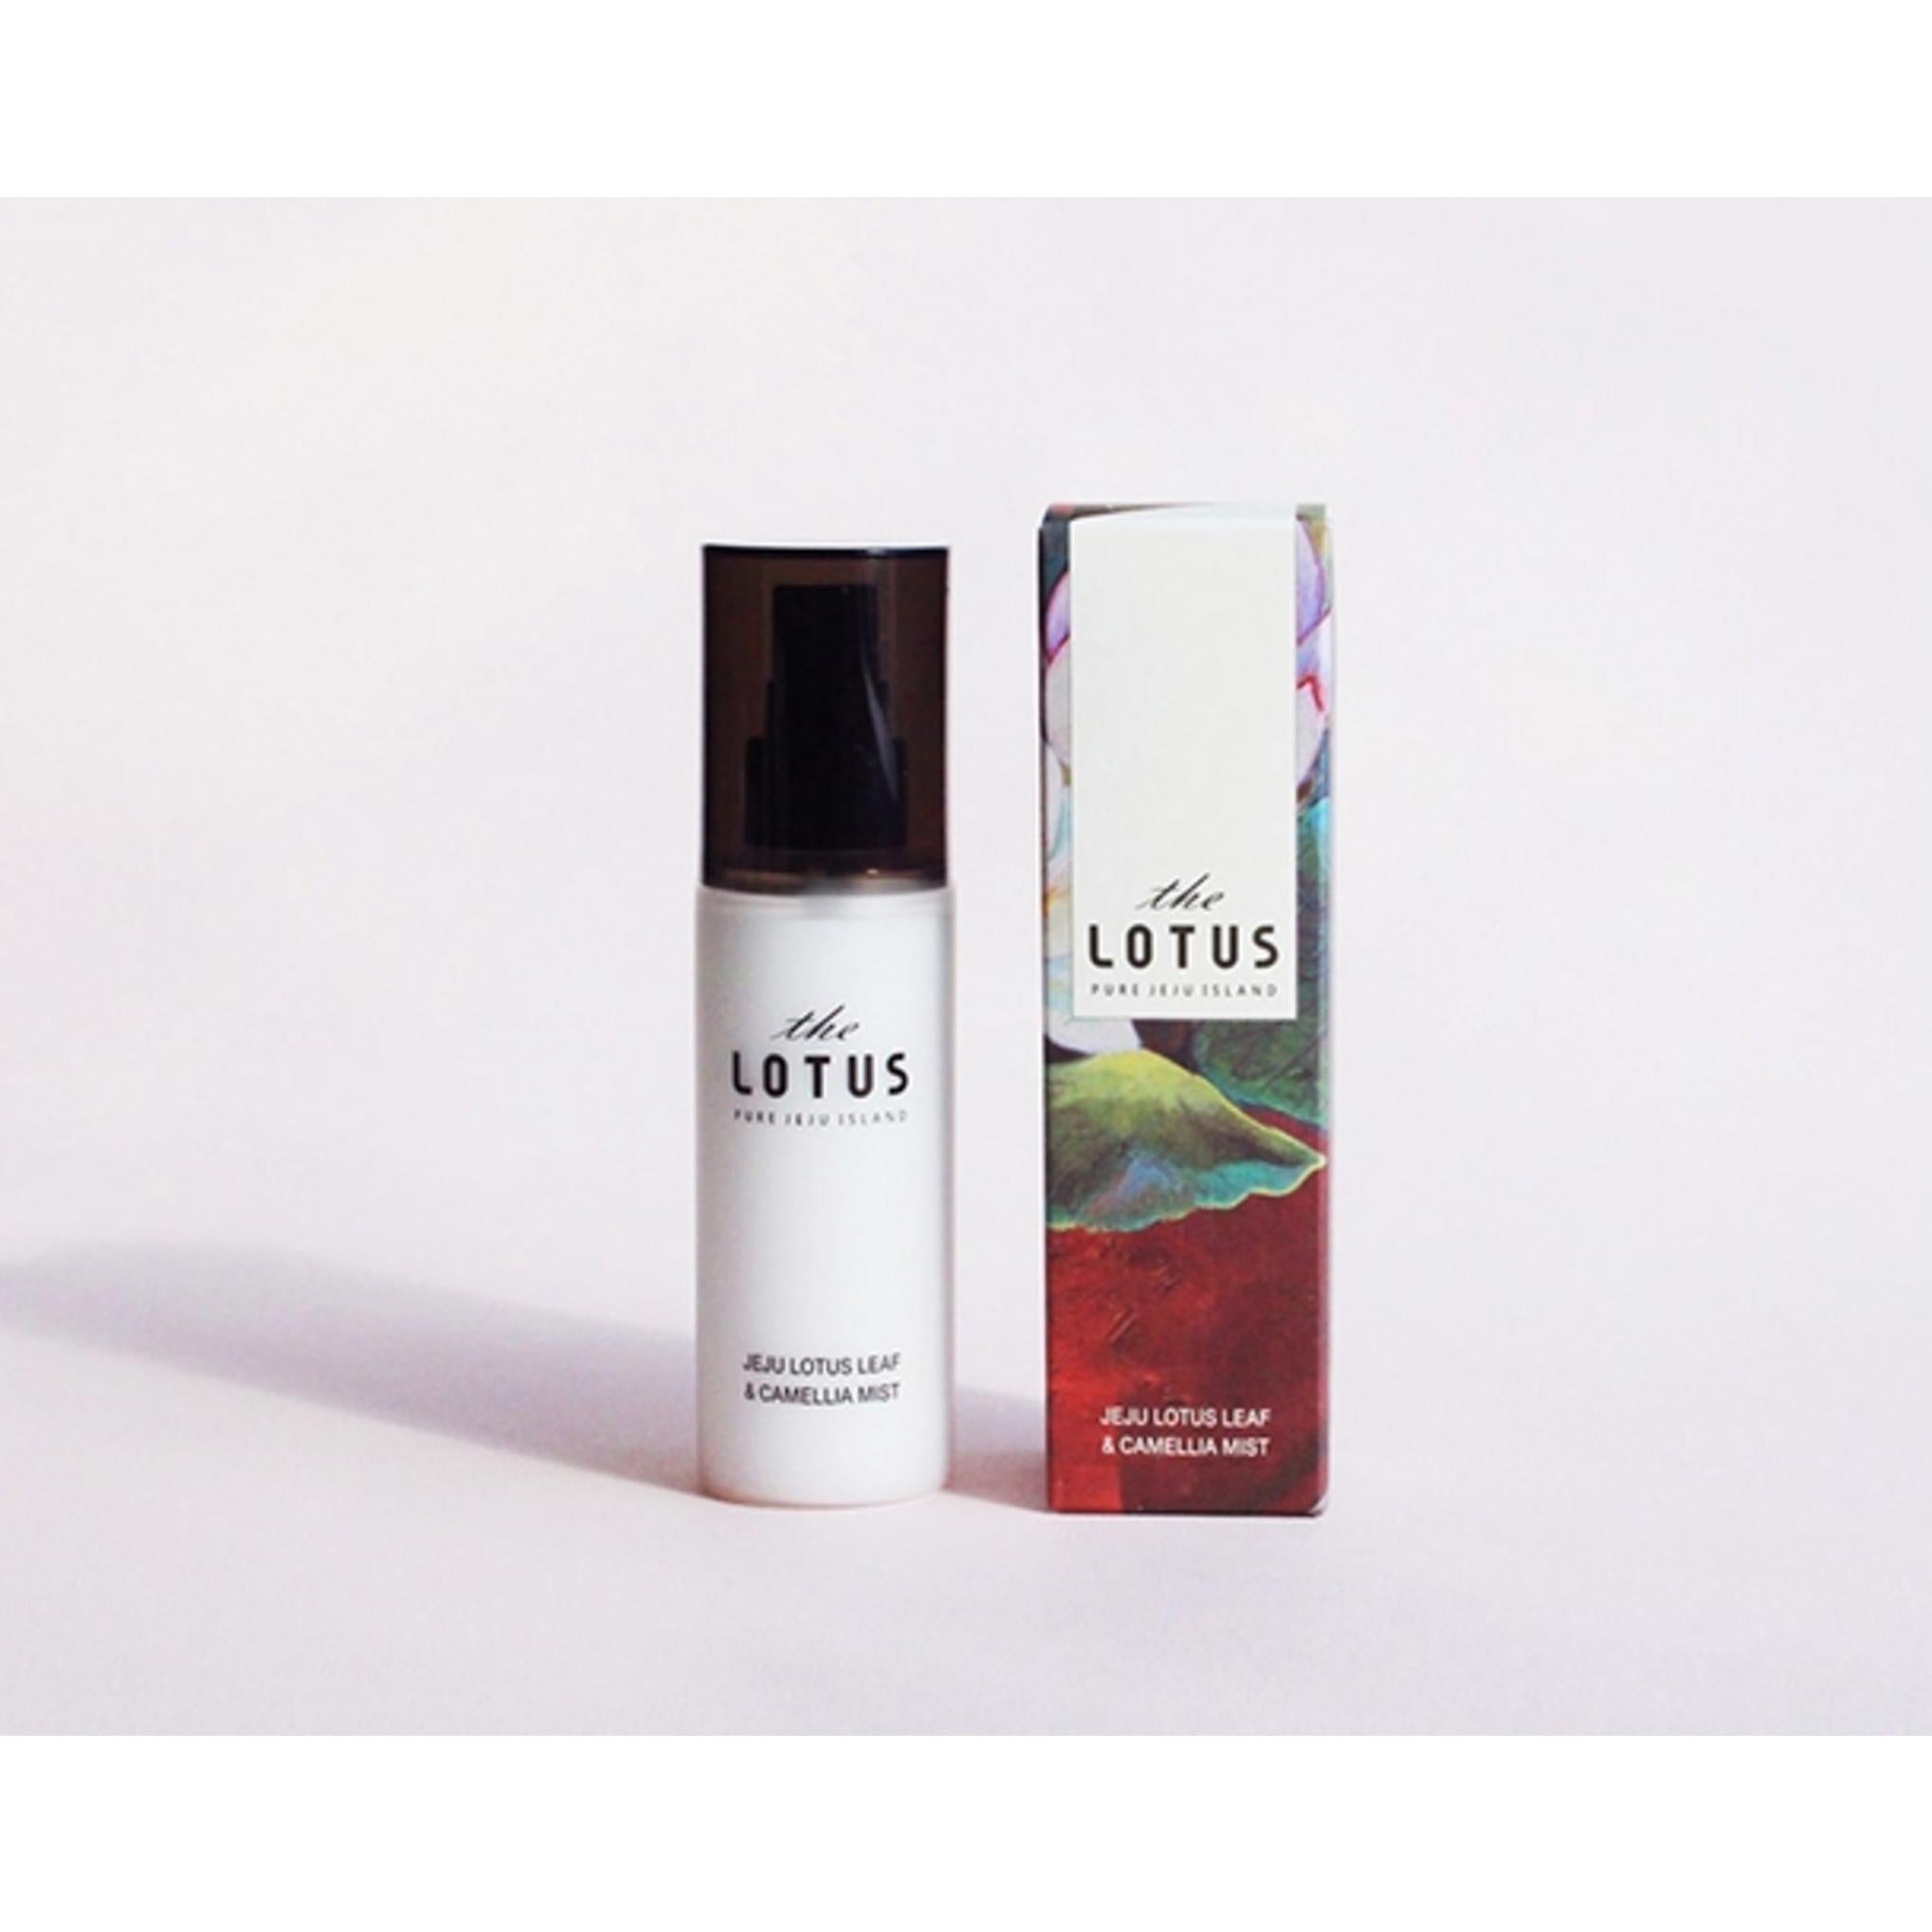 The Pure Lotus Jeju Lotus Leaf Mist + Cream 2p Set